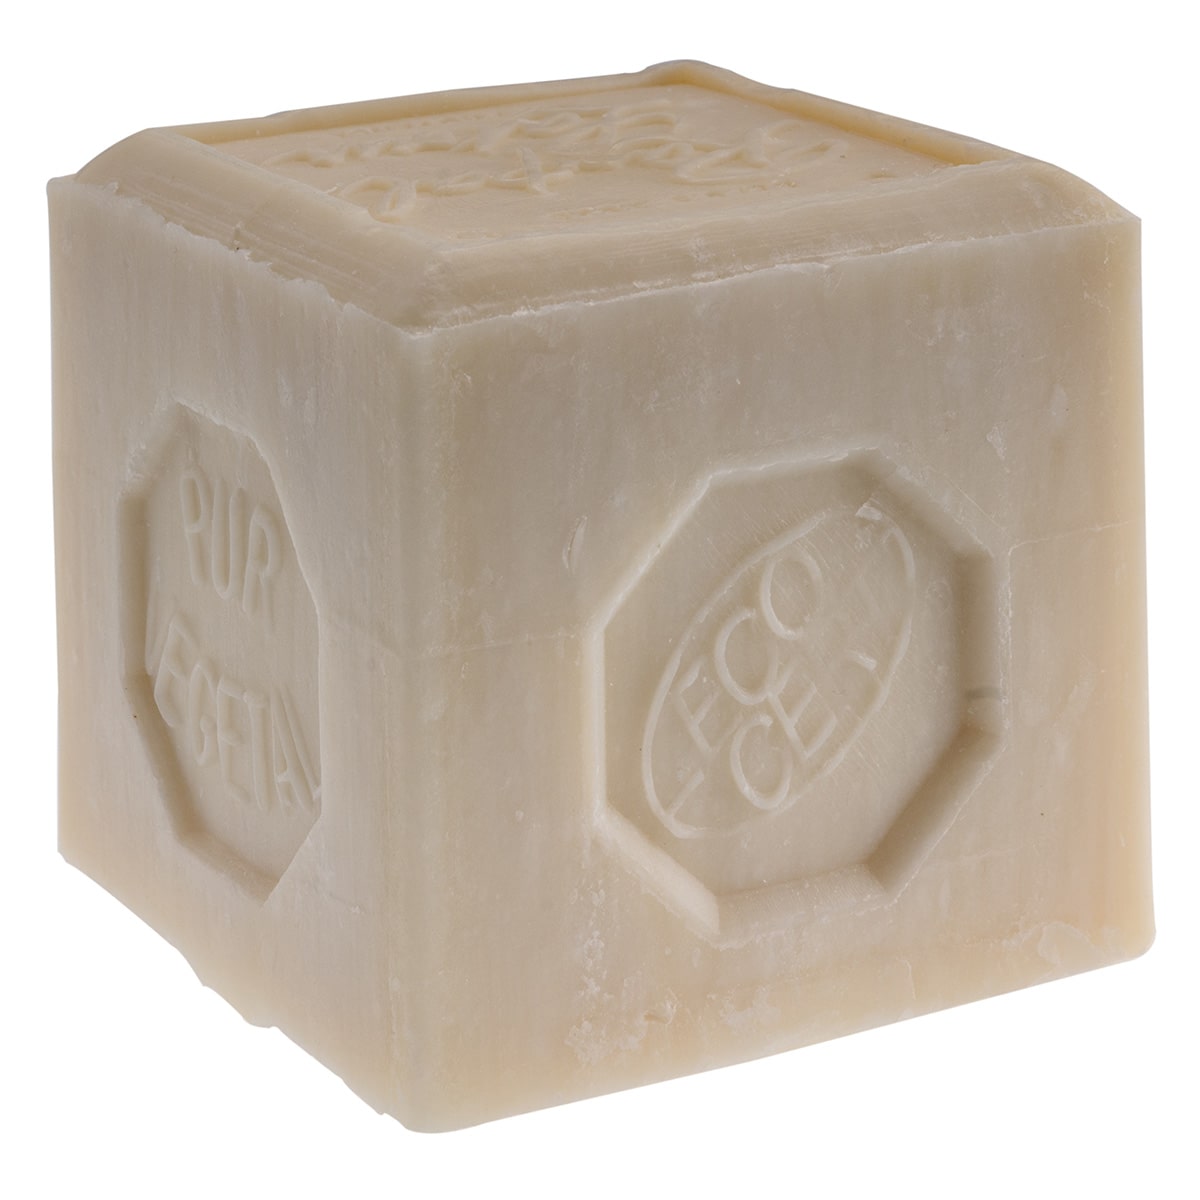 Cube de savon de Marseille aux huiles végétales 600g - Cosmos Natural